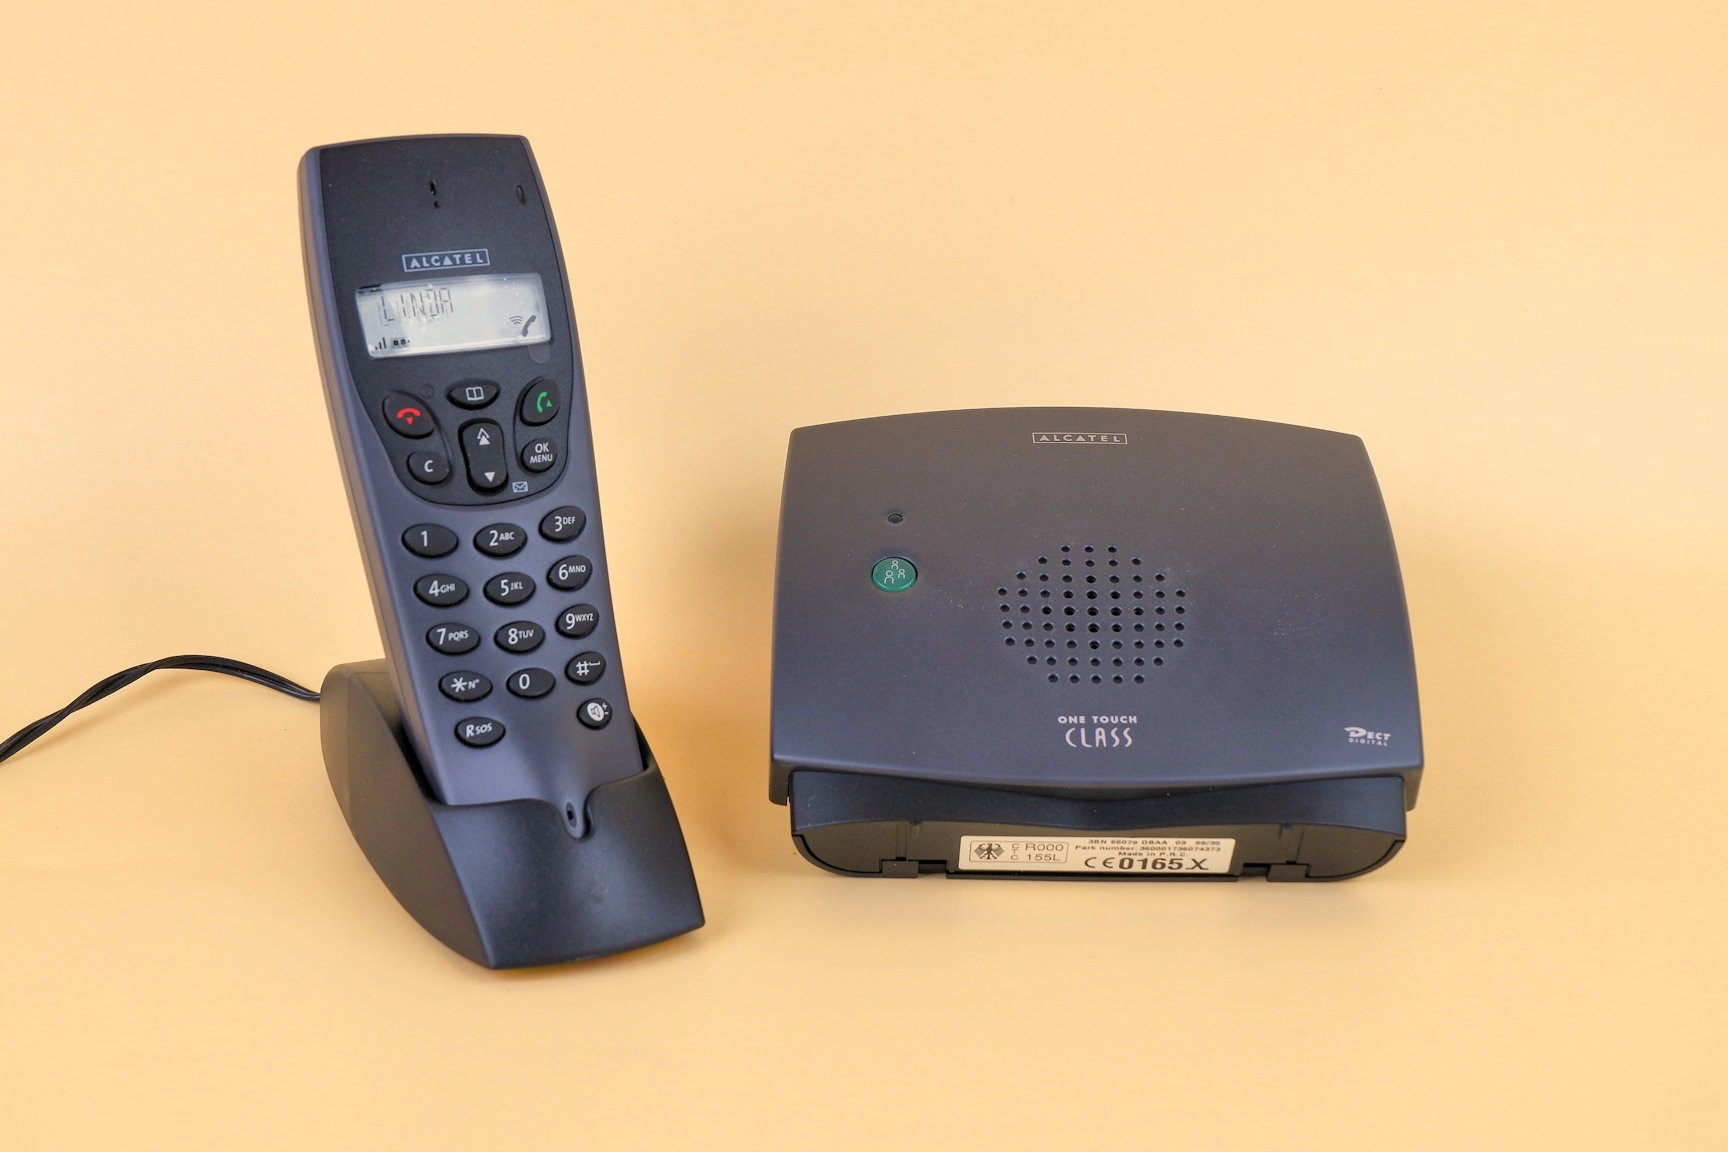 Schnurloses Telefon "Alcatel One touch Class" mit Basisstation (Volkskunde- und Freilichtmuseum Roscheider Hof CC0)